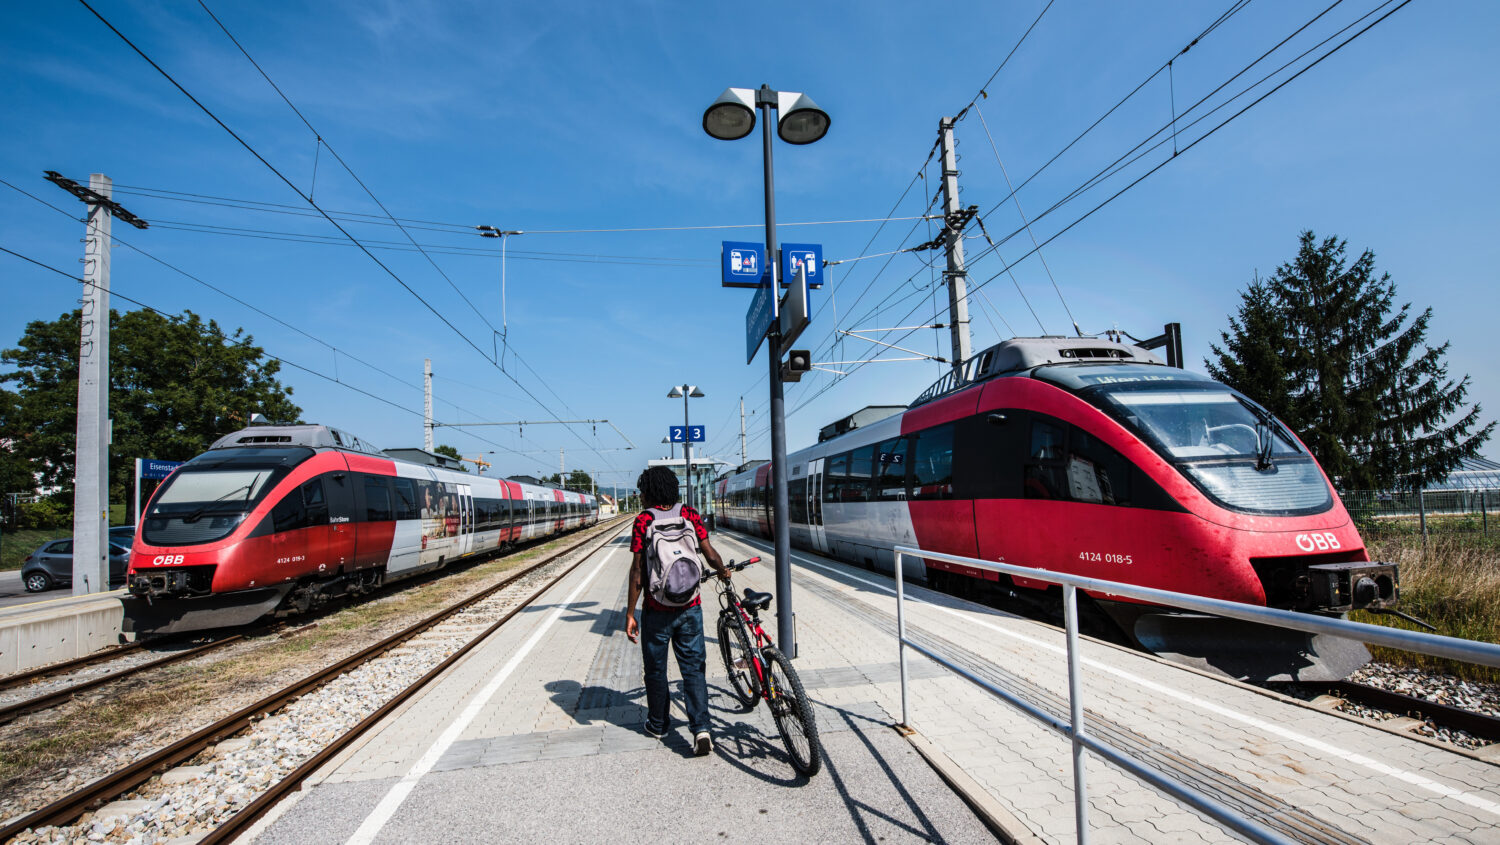 Studie zur Positionierung der Fahrleitungssystemtrennstelle zwischen Österreich und Ungarn bei der Elektrifizierung der Bahnlinie Jennersdorf –Szentgotthárd